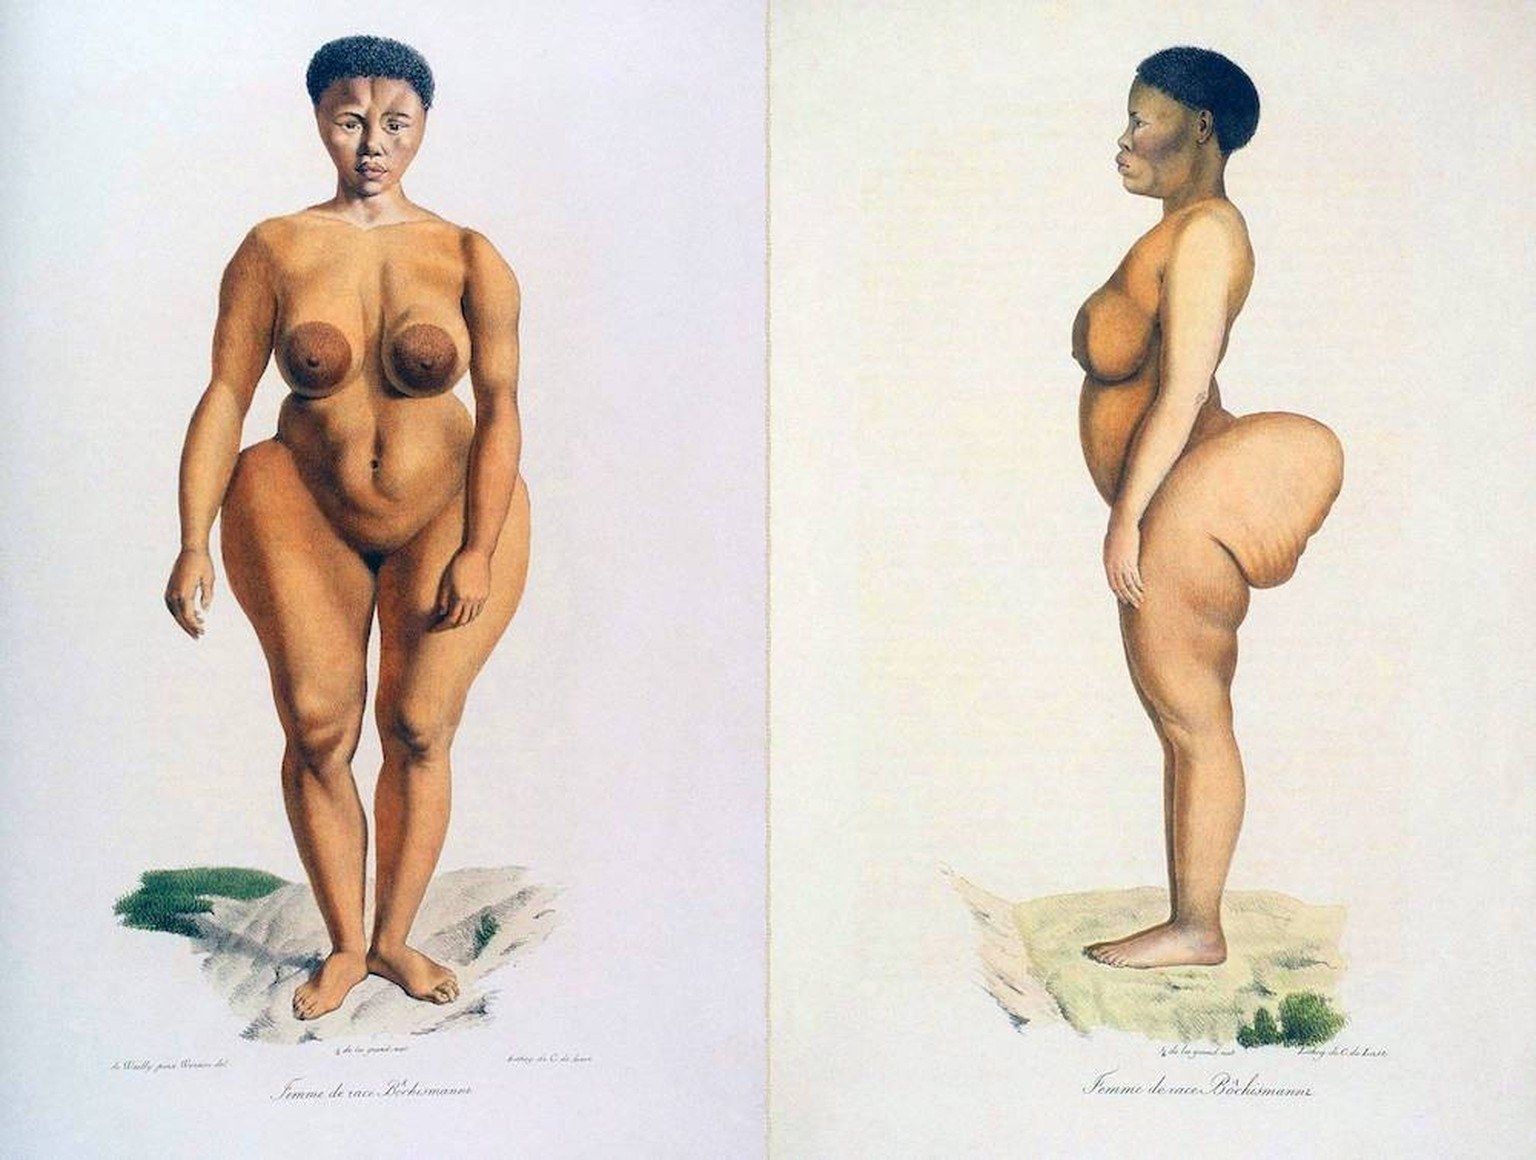 Saartjie Baartman était une femme khoïsan réduite en esclavage et exhibée en Europe pour son large postérieur, où elle était connue sous le surnom de «Vénus hottentote».